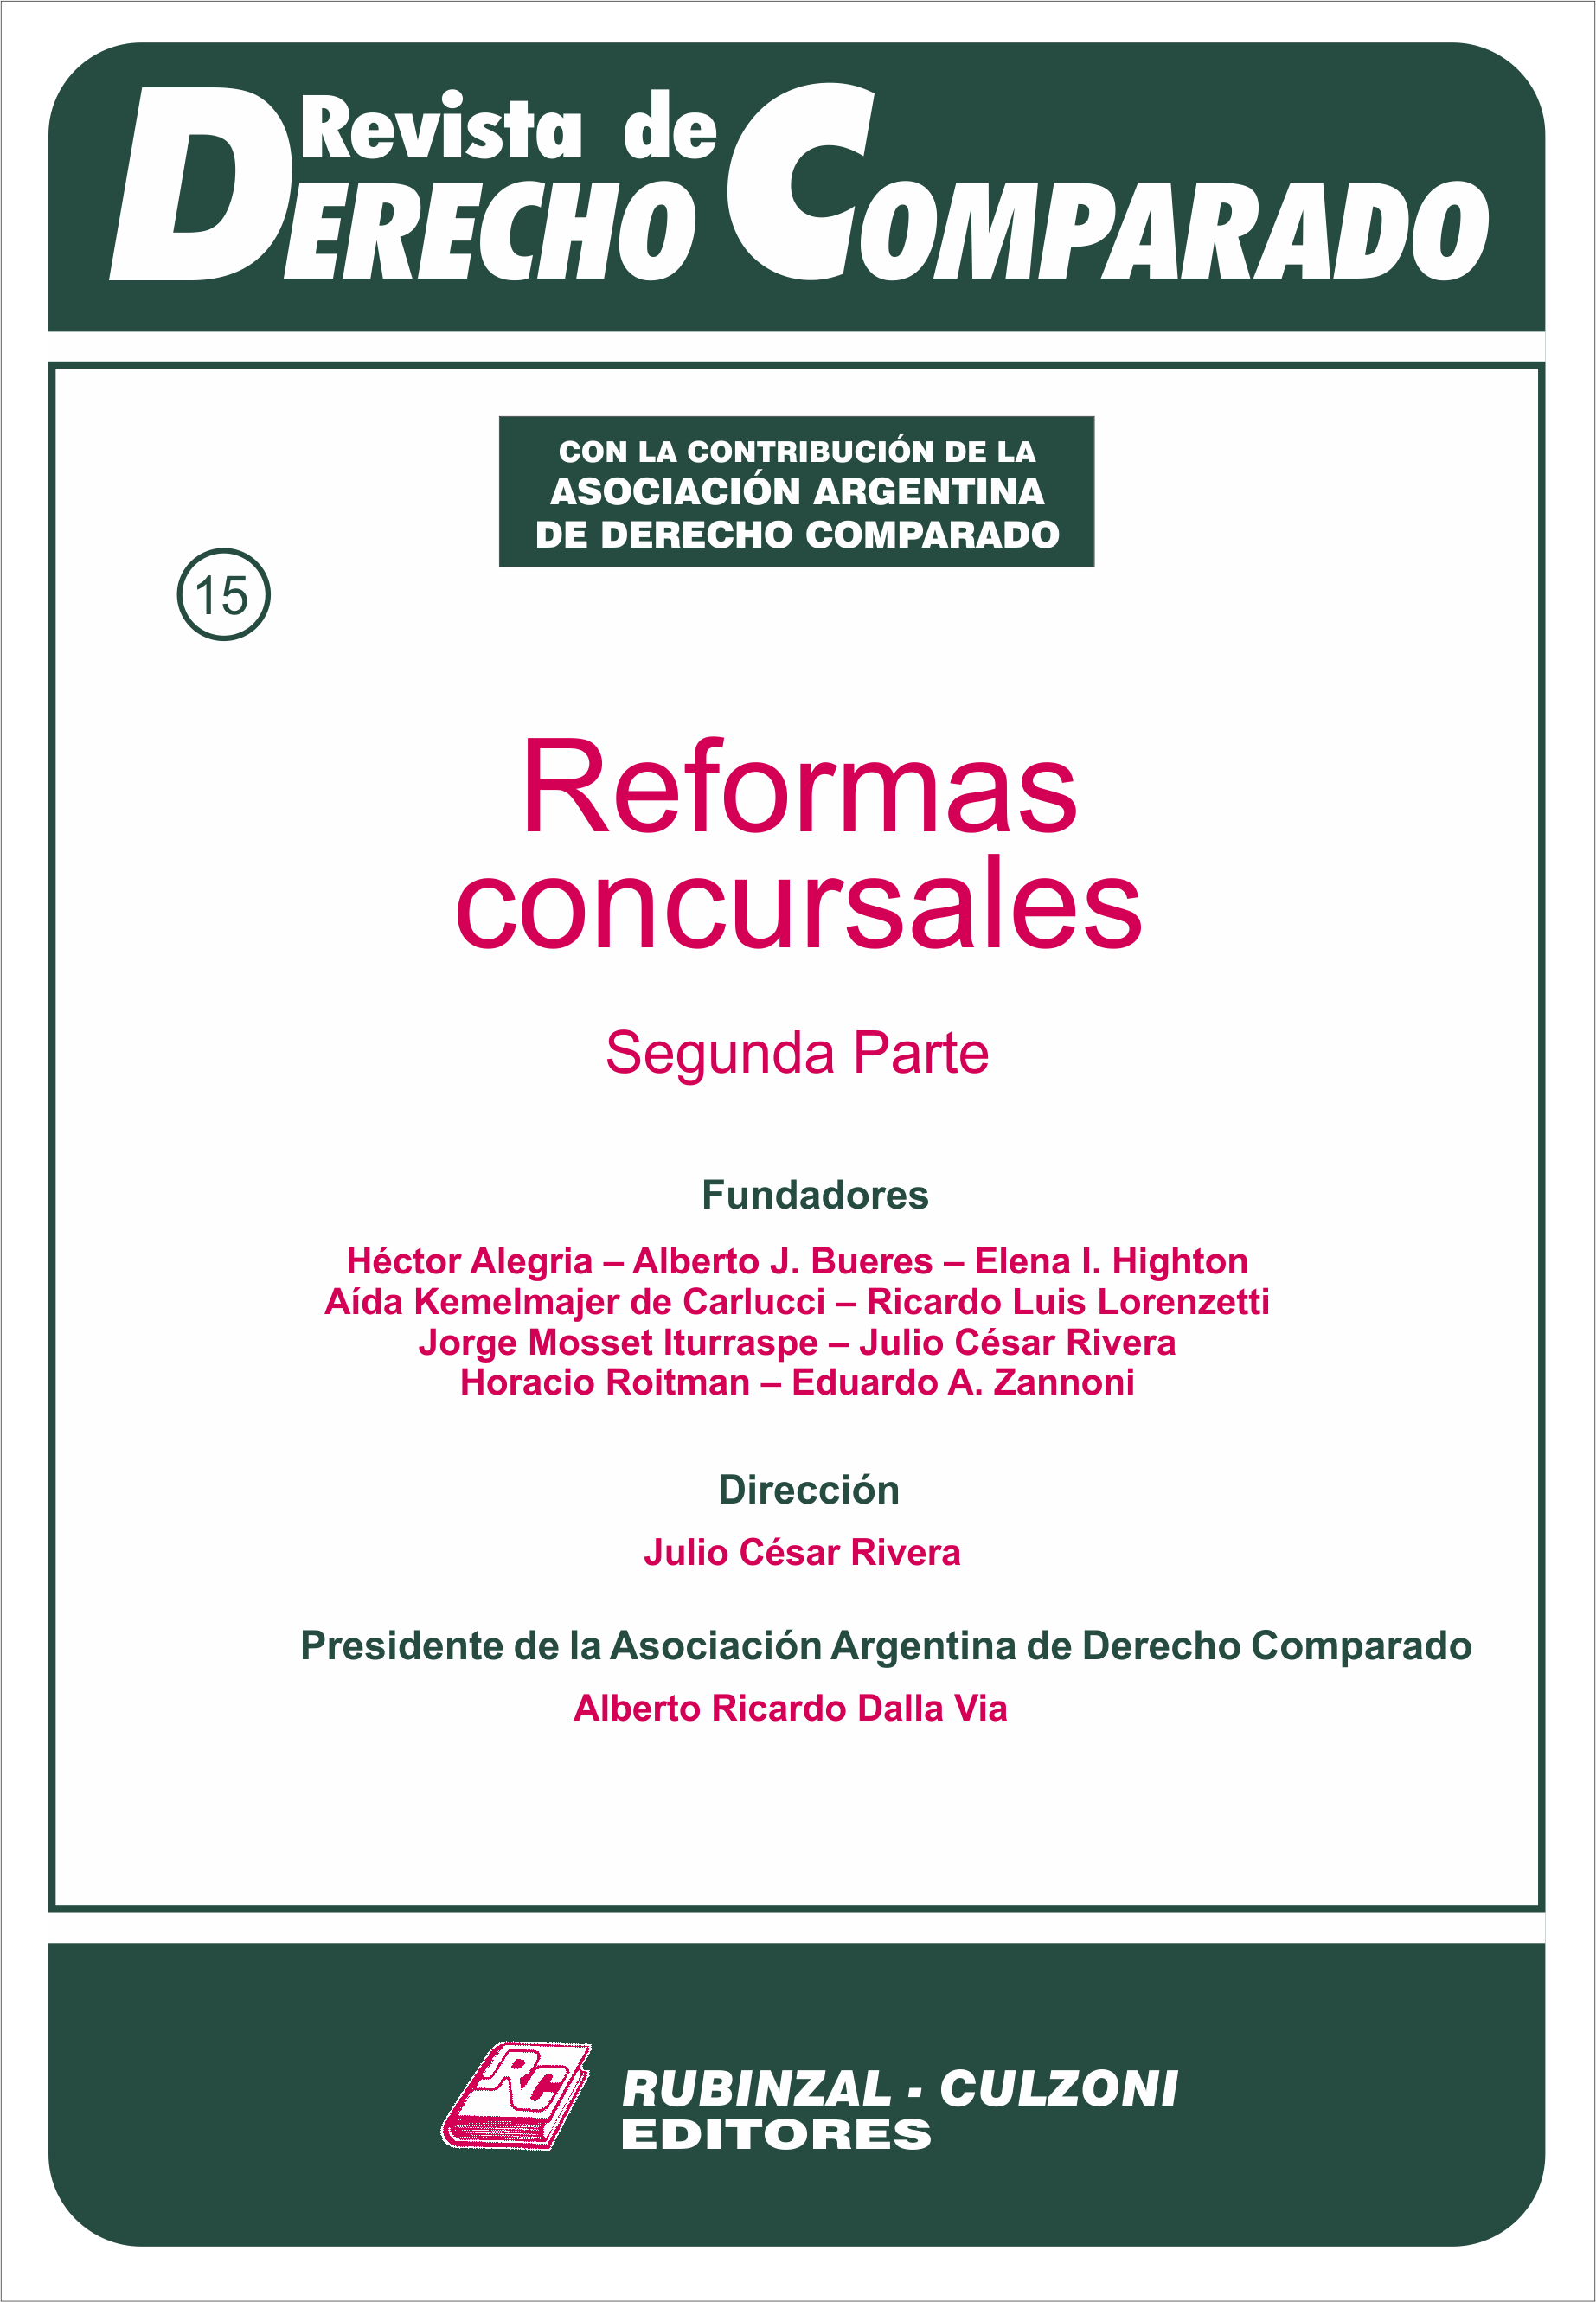 Revista de Derecho Comparado - Reformas concursales (Segunda parte).